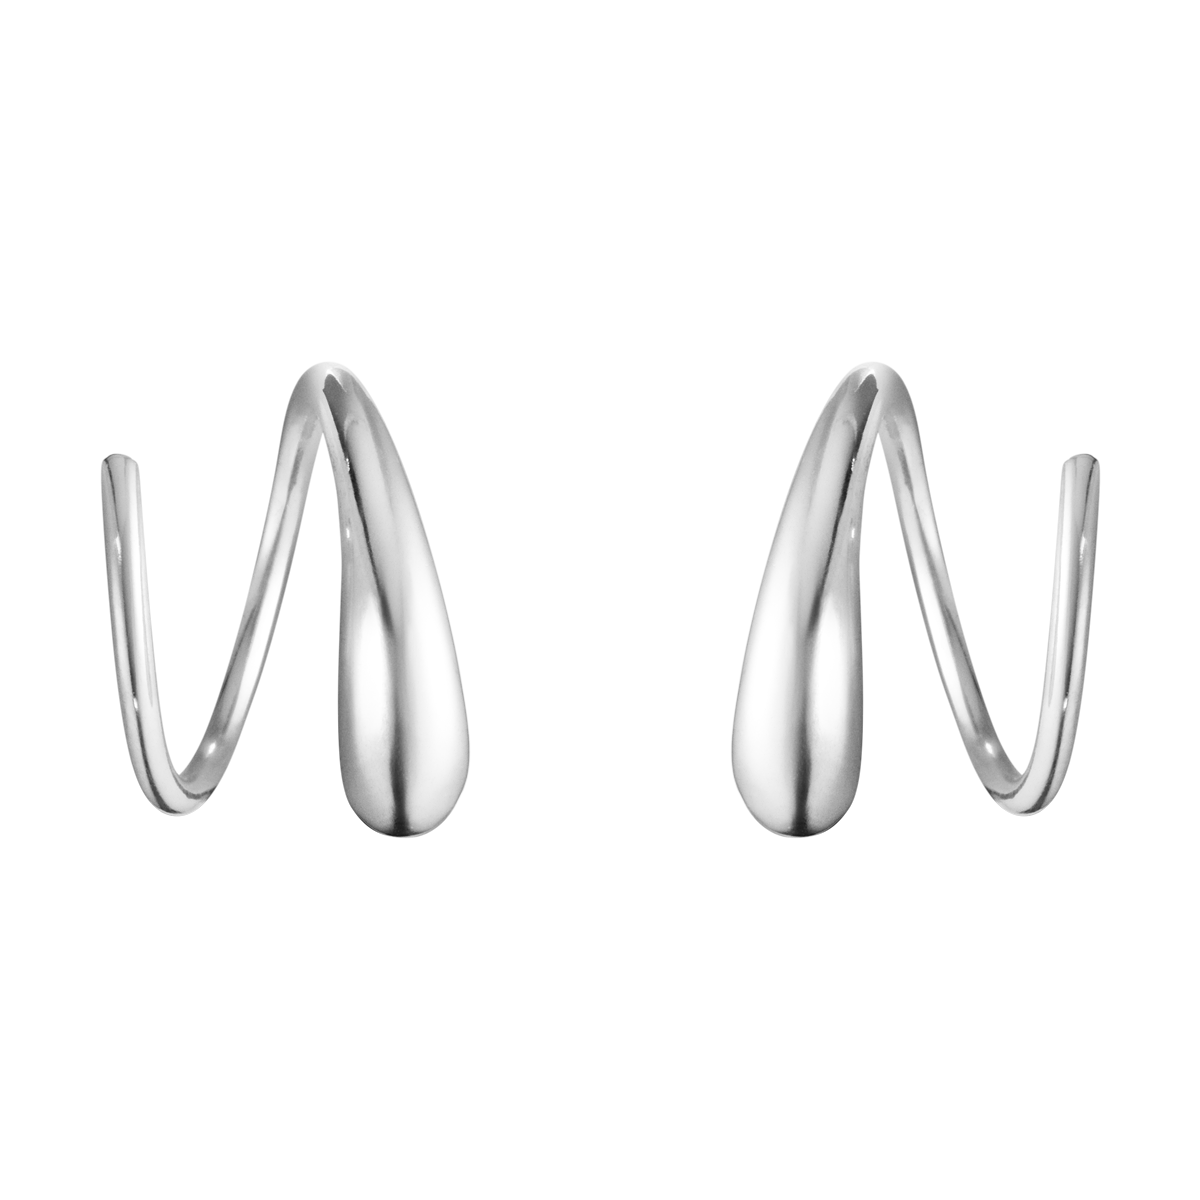 Mercy øreringe - sølv fra Georg Jensen